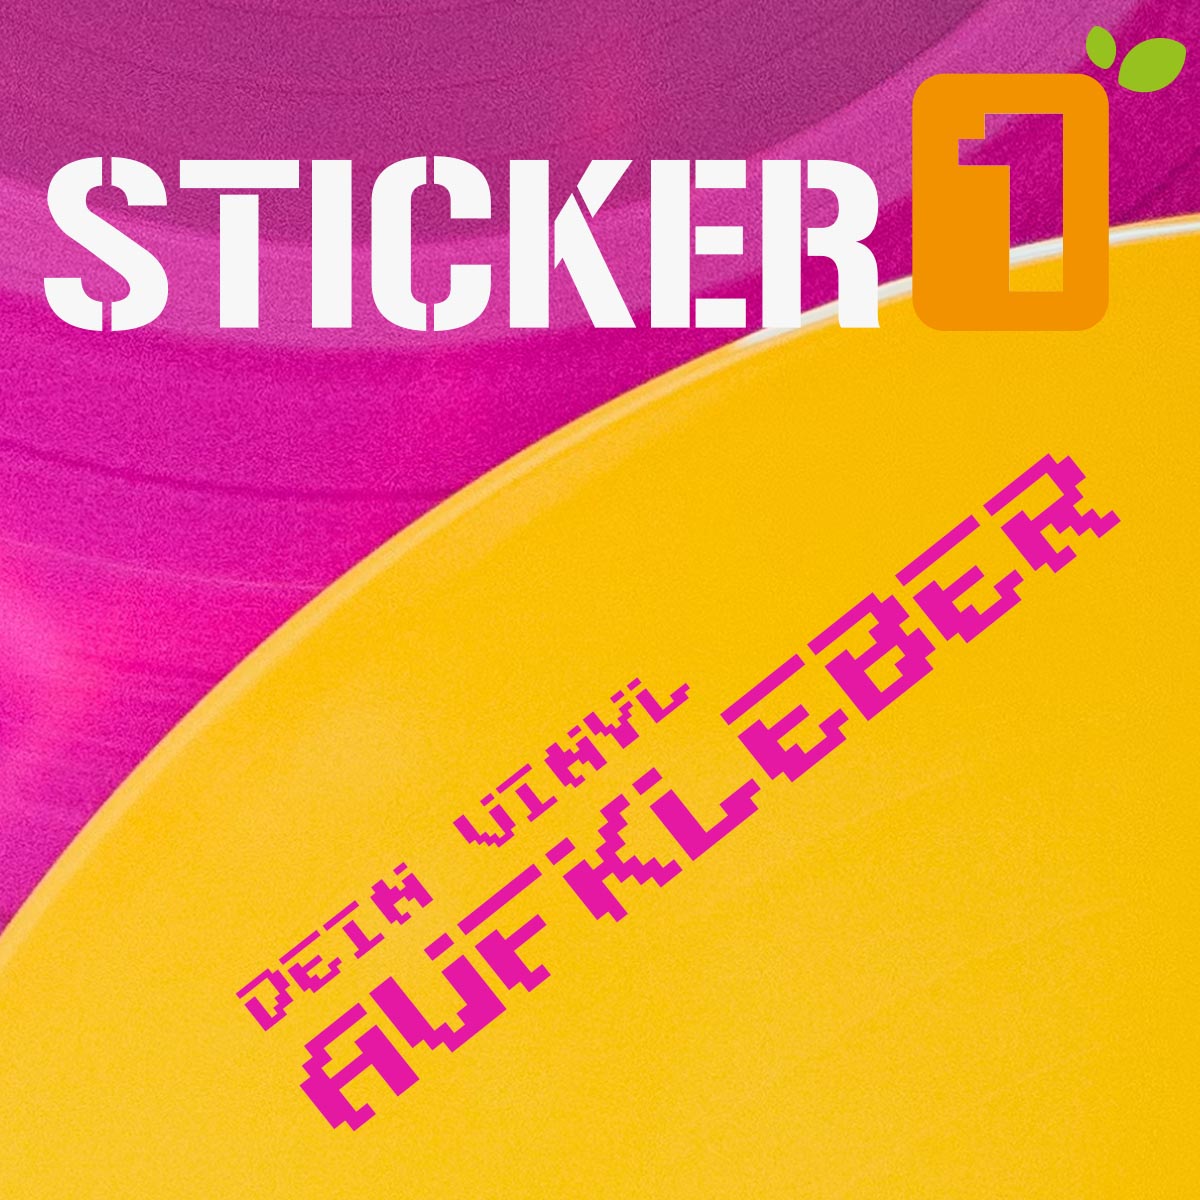 https://sticker-1.com/wp-content/uploads/2023/05/Plottaufkleber-Transferaufkleber-Vinyl-Aufkleber-Sticker.jpg